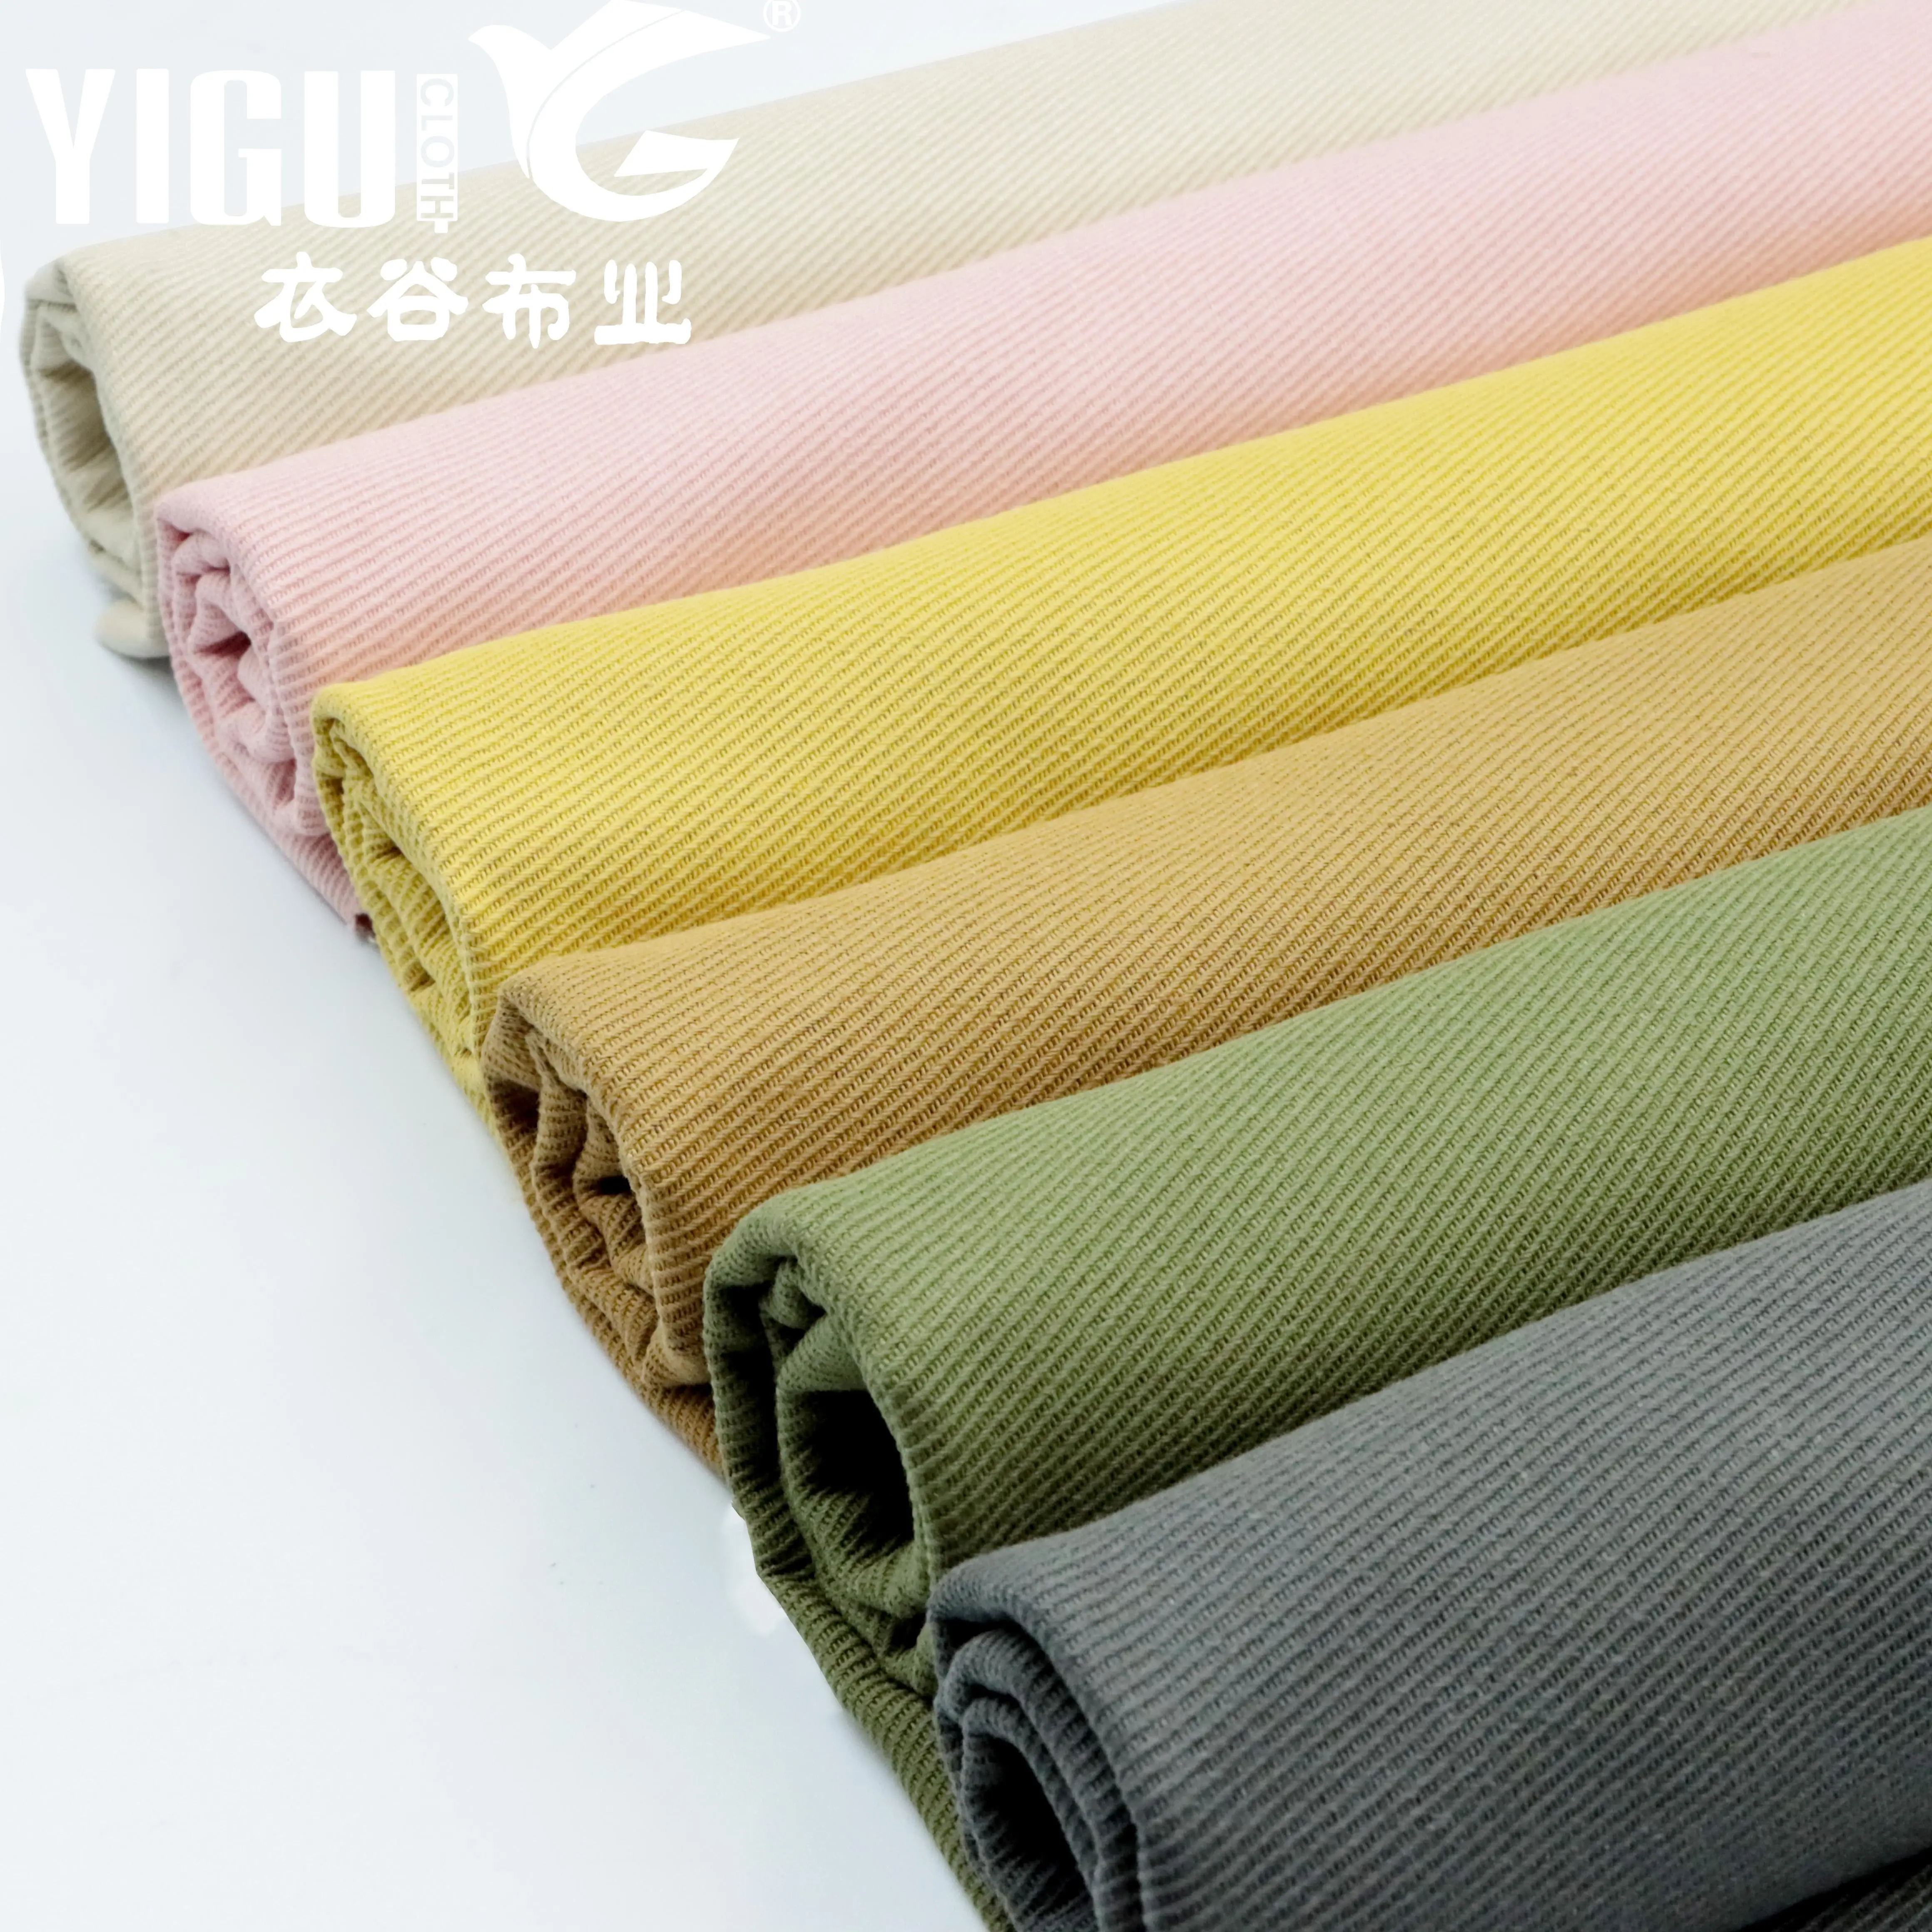 Fábrica de China 100% tela de algodón sin munición de alta calidad y sensación suave lavado de tela de algodón no se desvanecerá tela de algodón